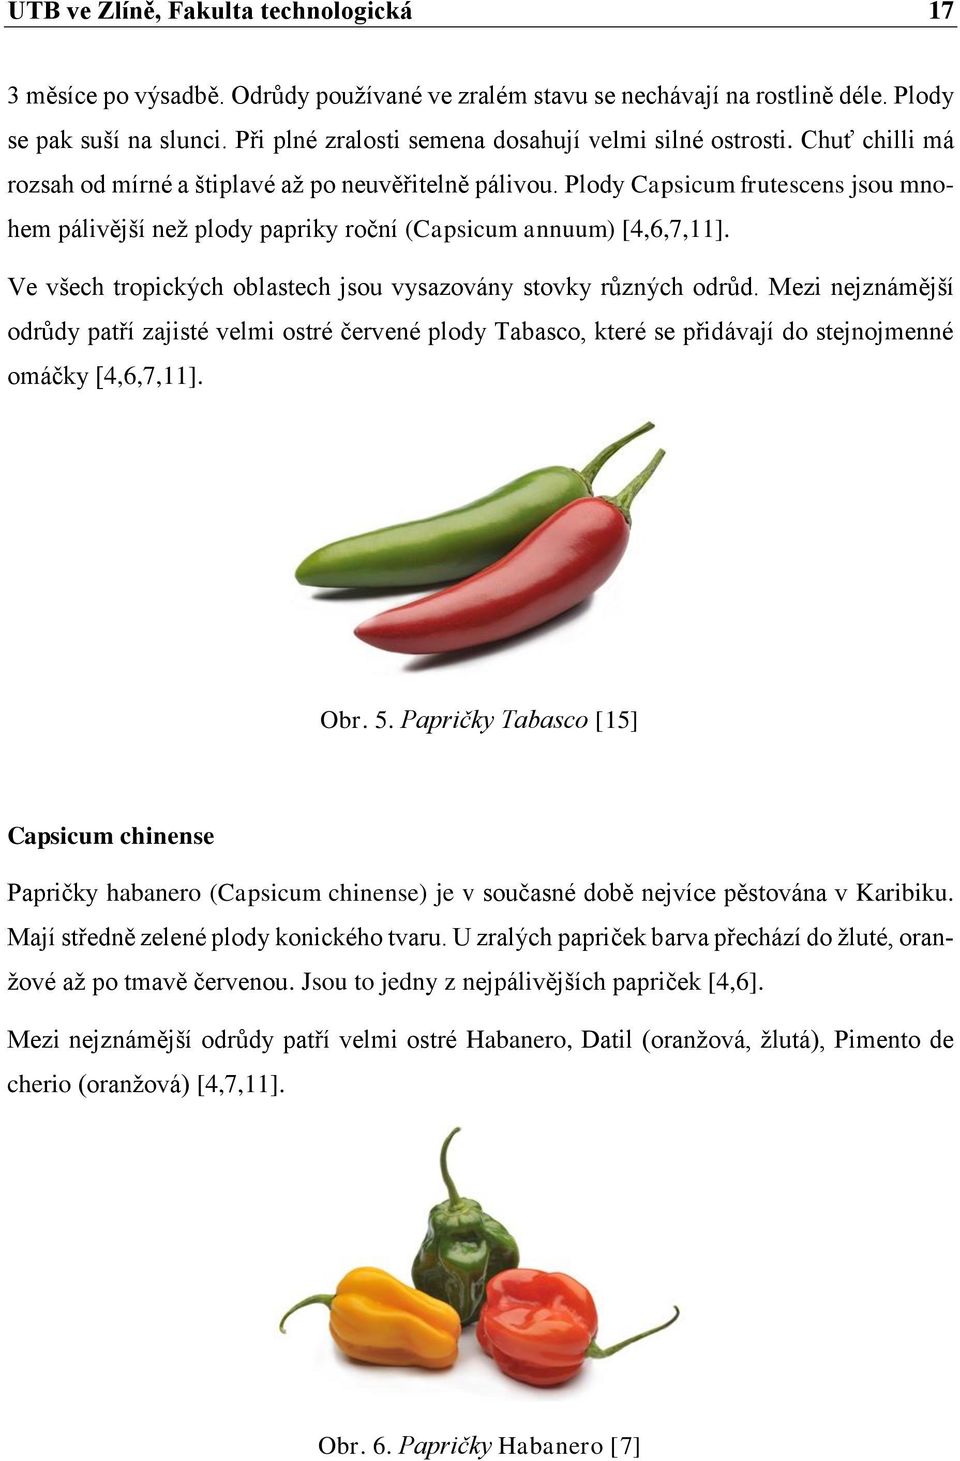 Plody Capsicum frutescens jsou mnohem pálivější než plody papriky roční (Capsicum annuum) [4,6,7,11]. Ve všech tropických oblastech jsou vysazovány stovky různých odrůd.